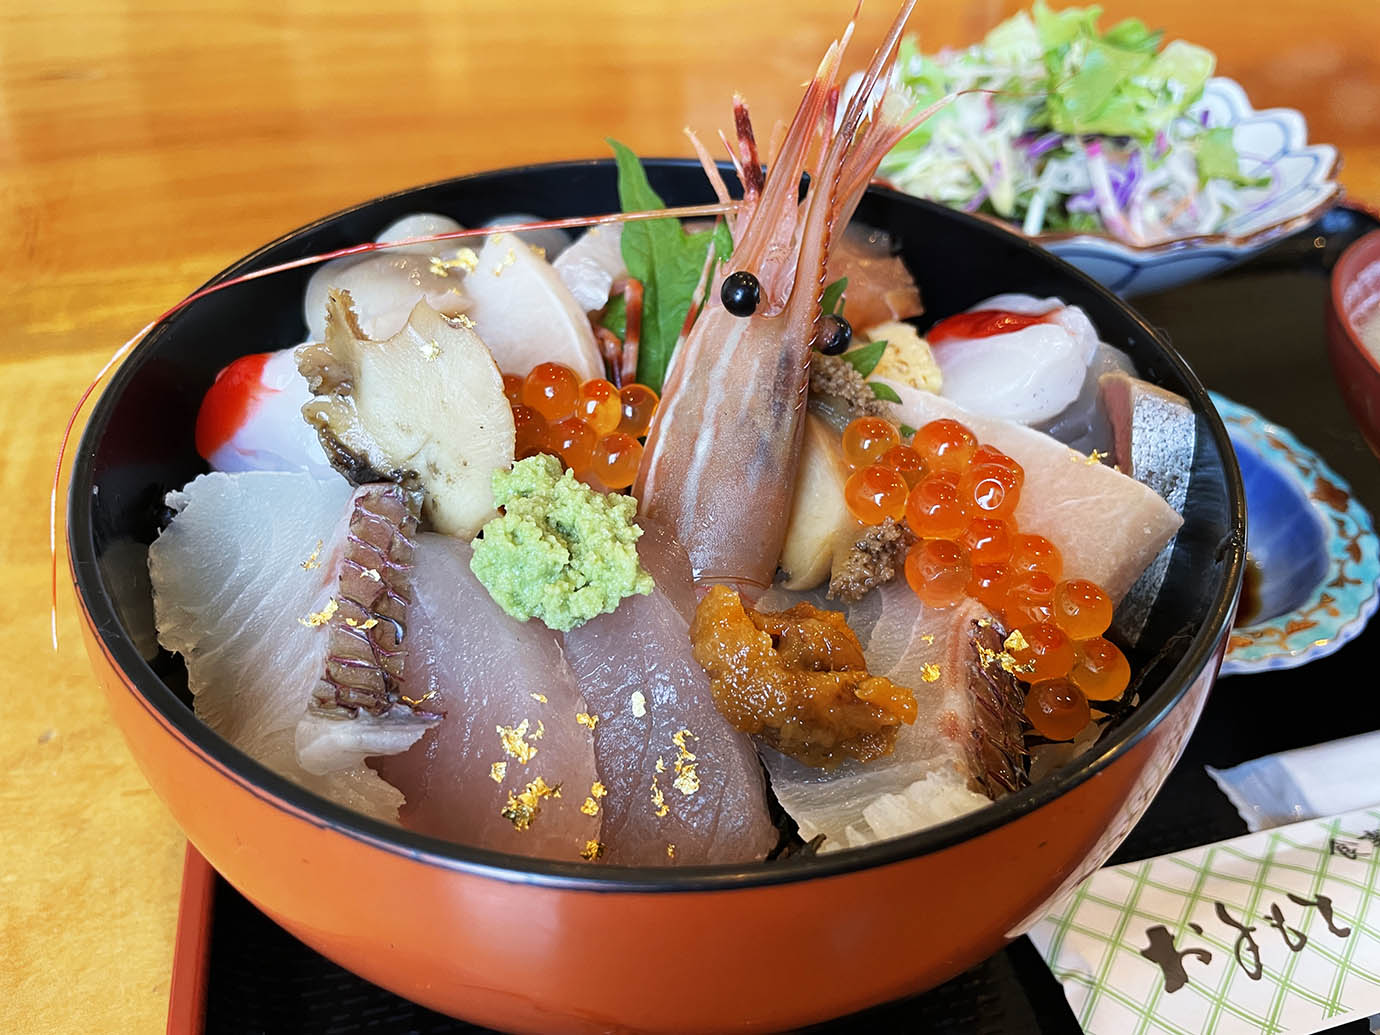 【大島グルメ】気仙沼大島で魚介類を食べたいなら「はま家」なら間違いない / 海鮮丼と汁物が実にウマイ